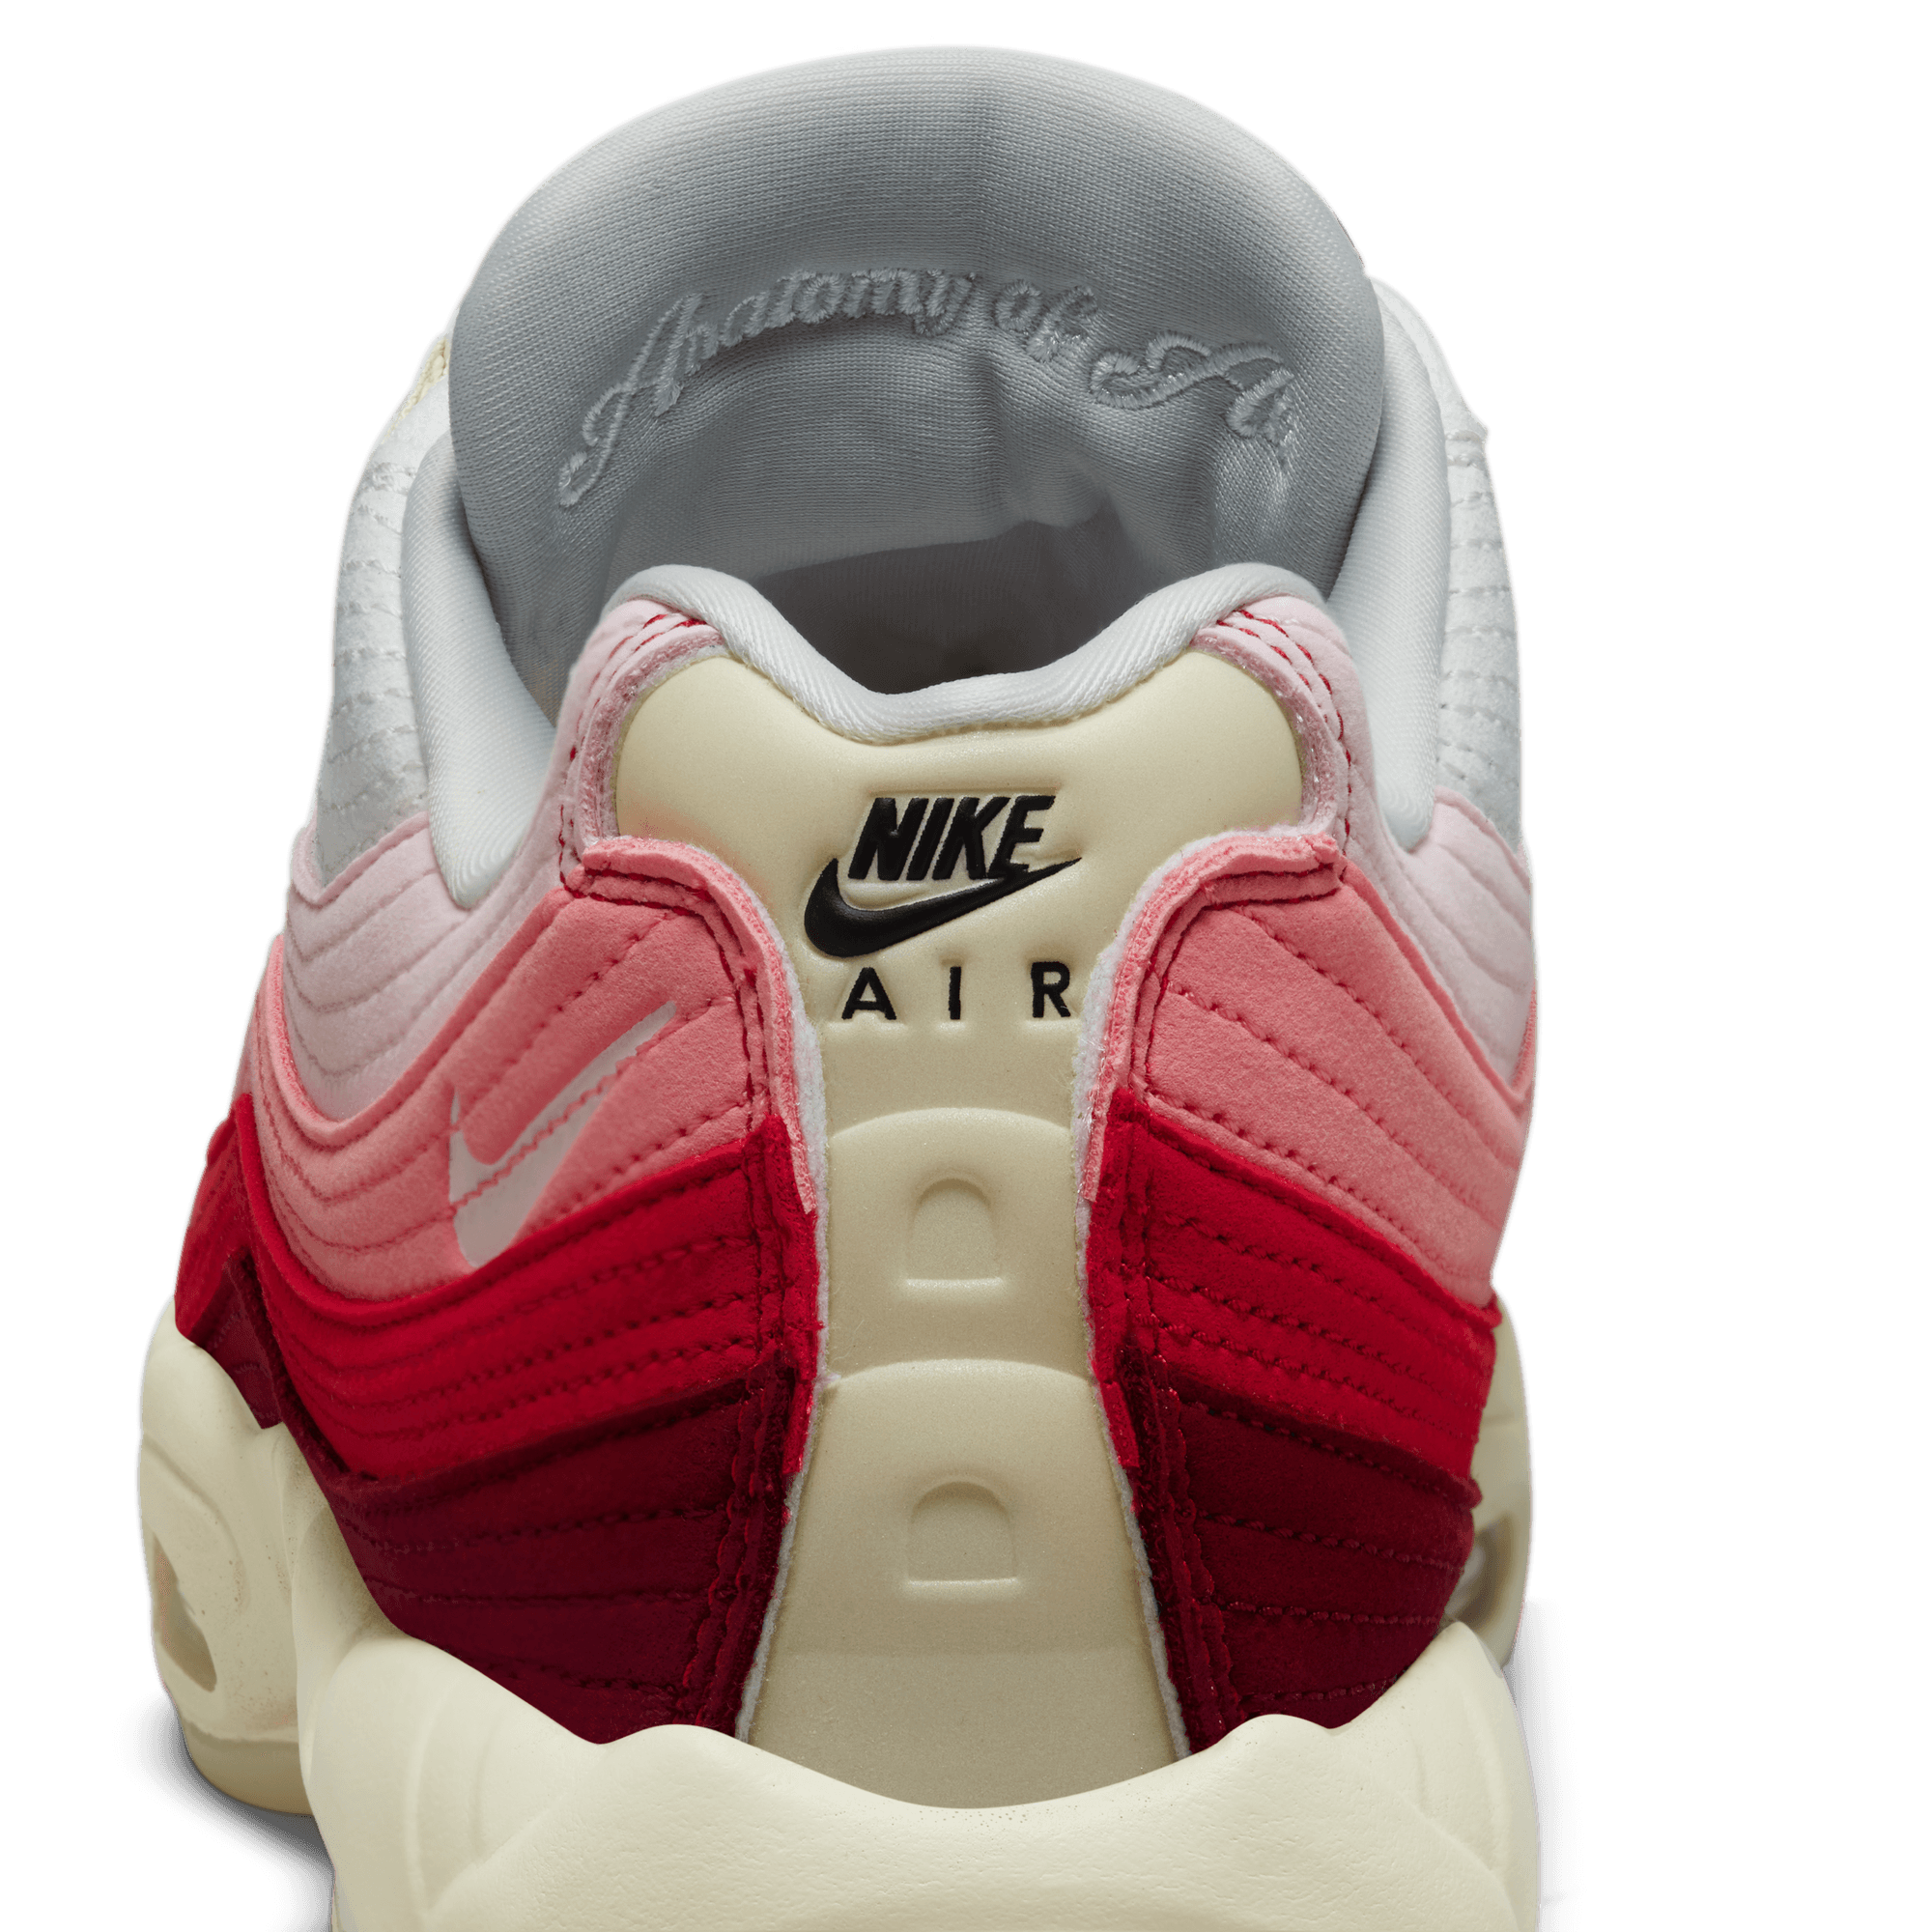 Nike Air Max 95 QS 'Muscle'